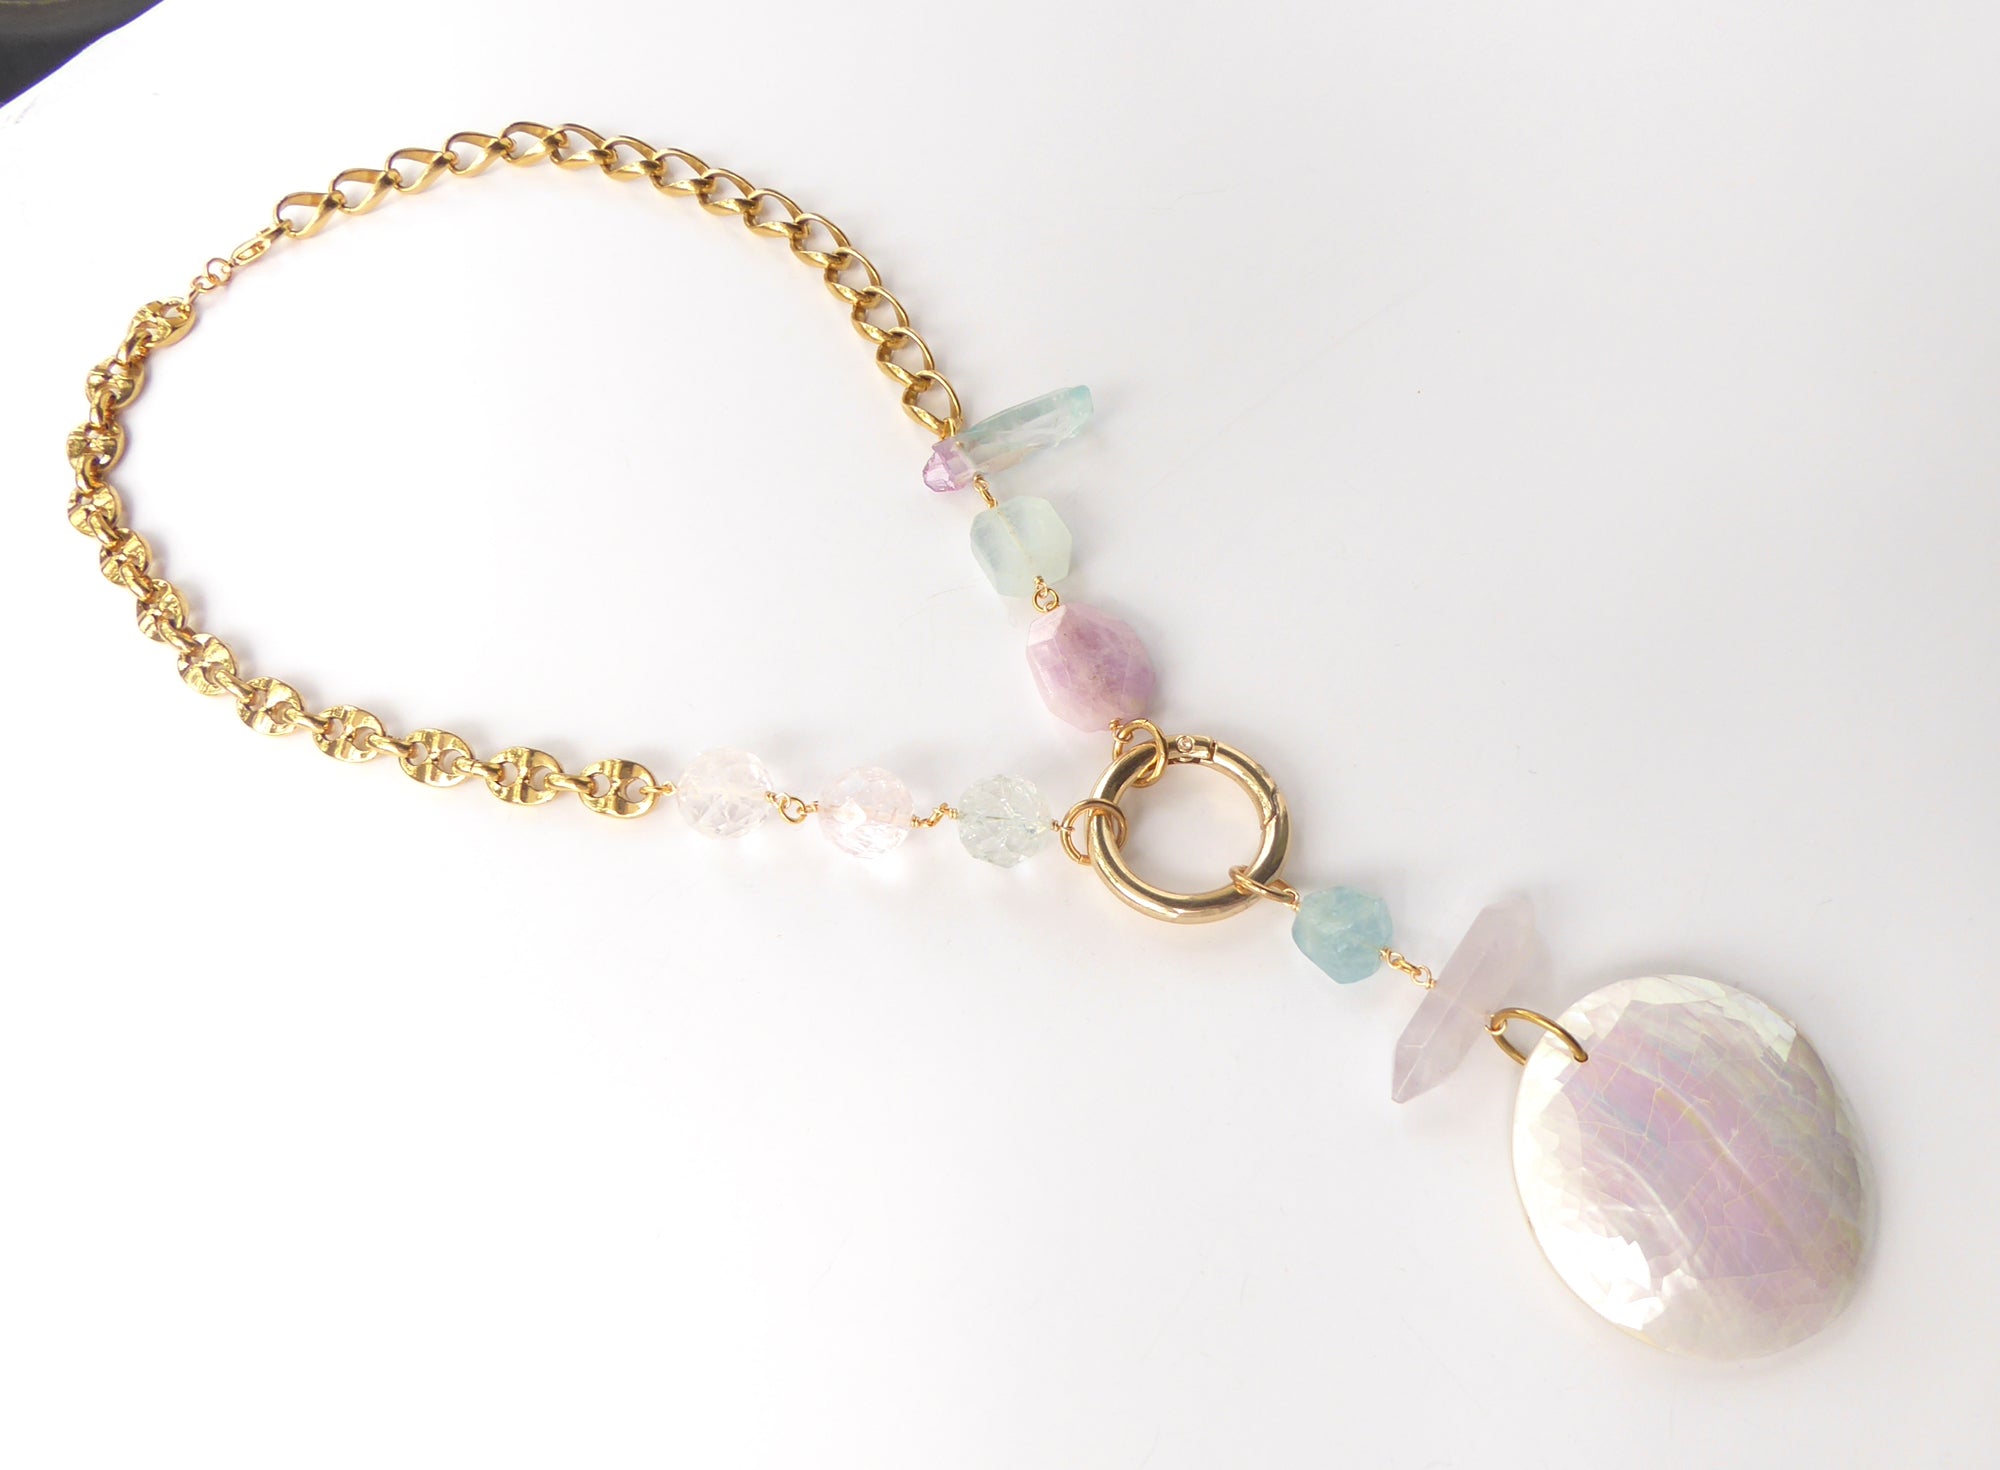 Candy crystal necklace by Jenny Dayco 2